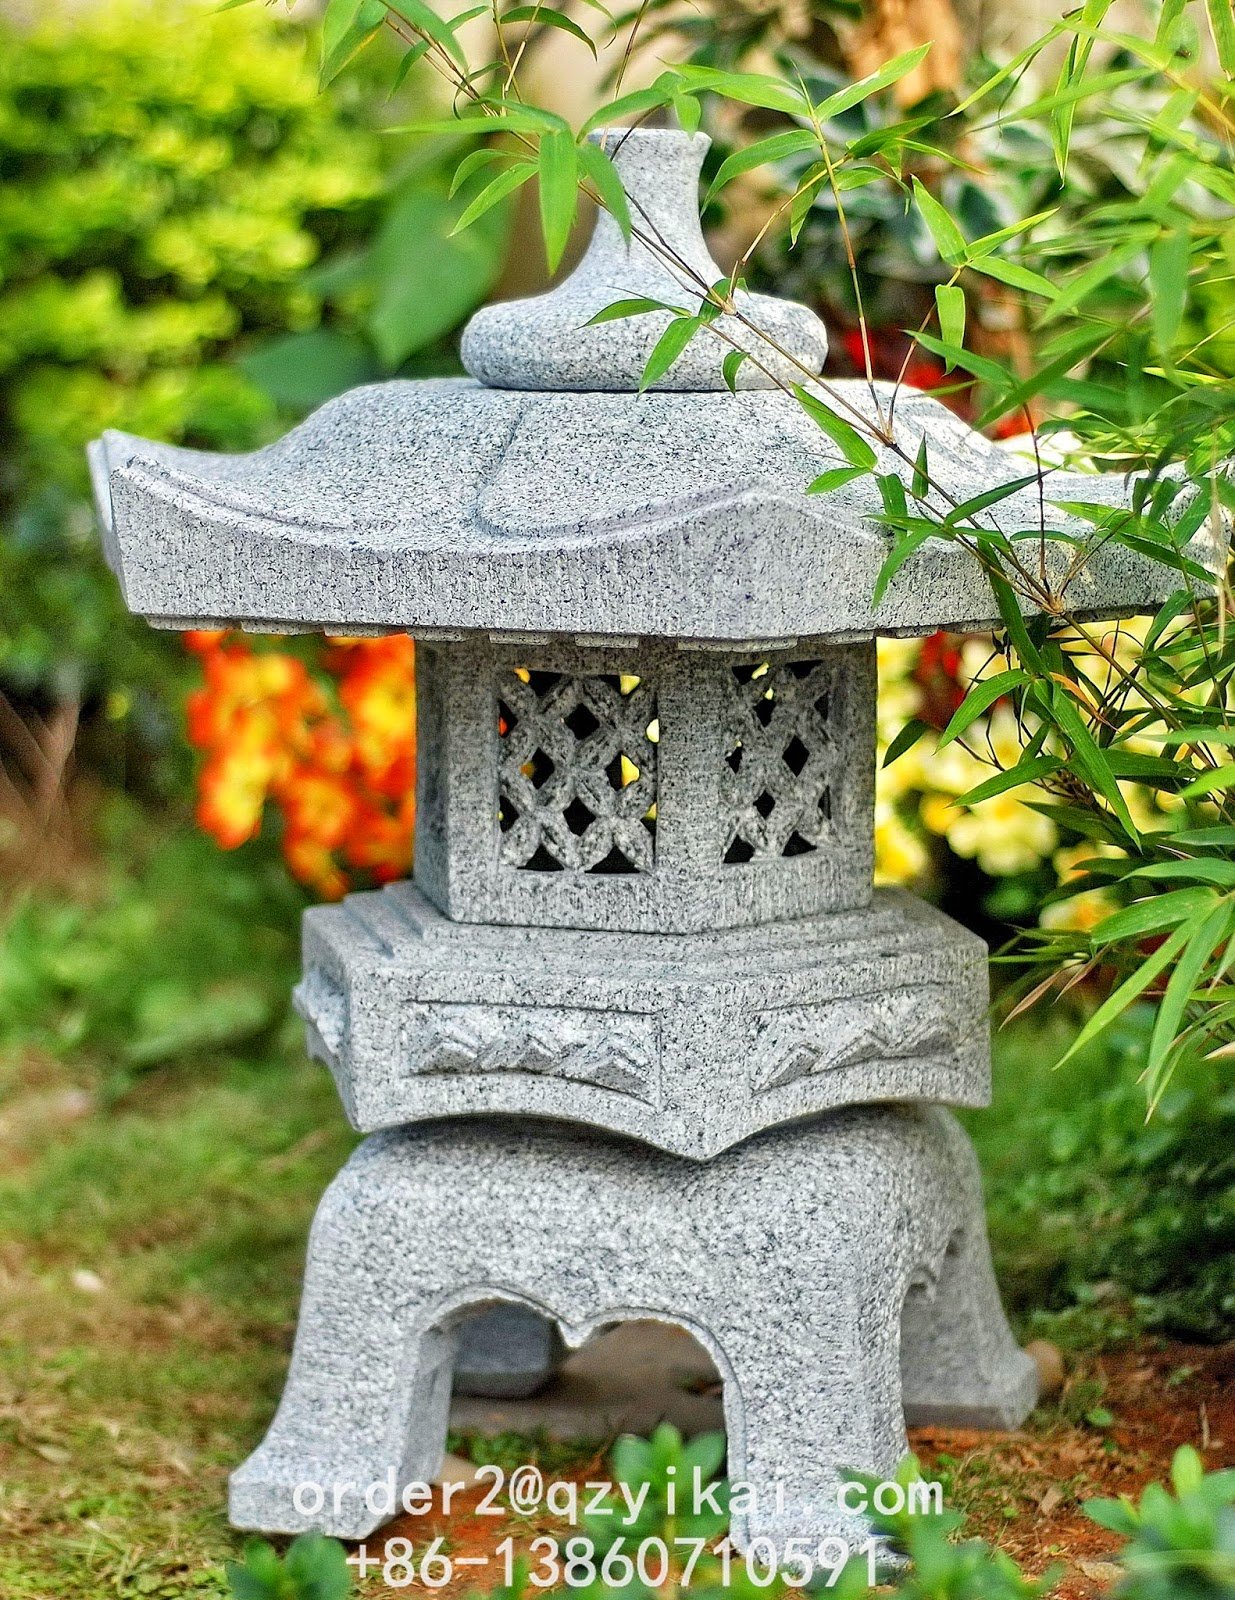 Фонарь Юкими Торо. Японский фонарь цикубаи. Фонарь Касуга Торо. Каменные фонари в японском саду. Японский садовый фонарь